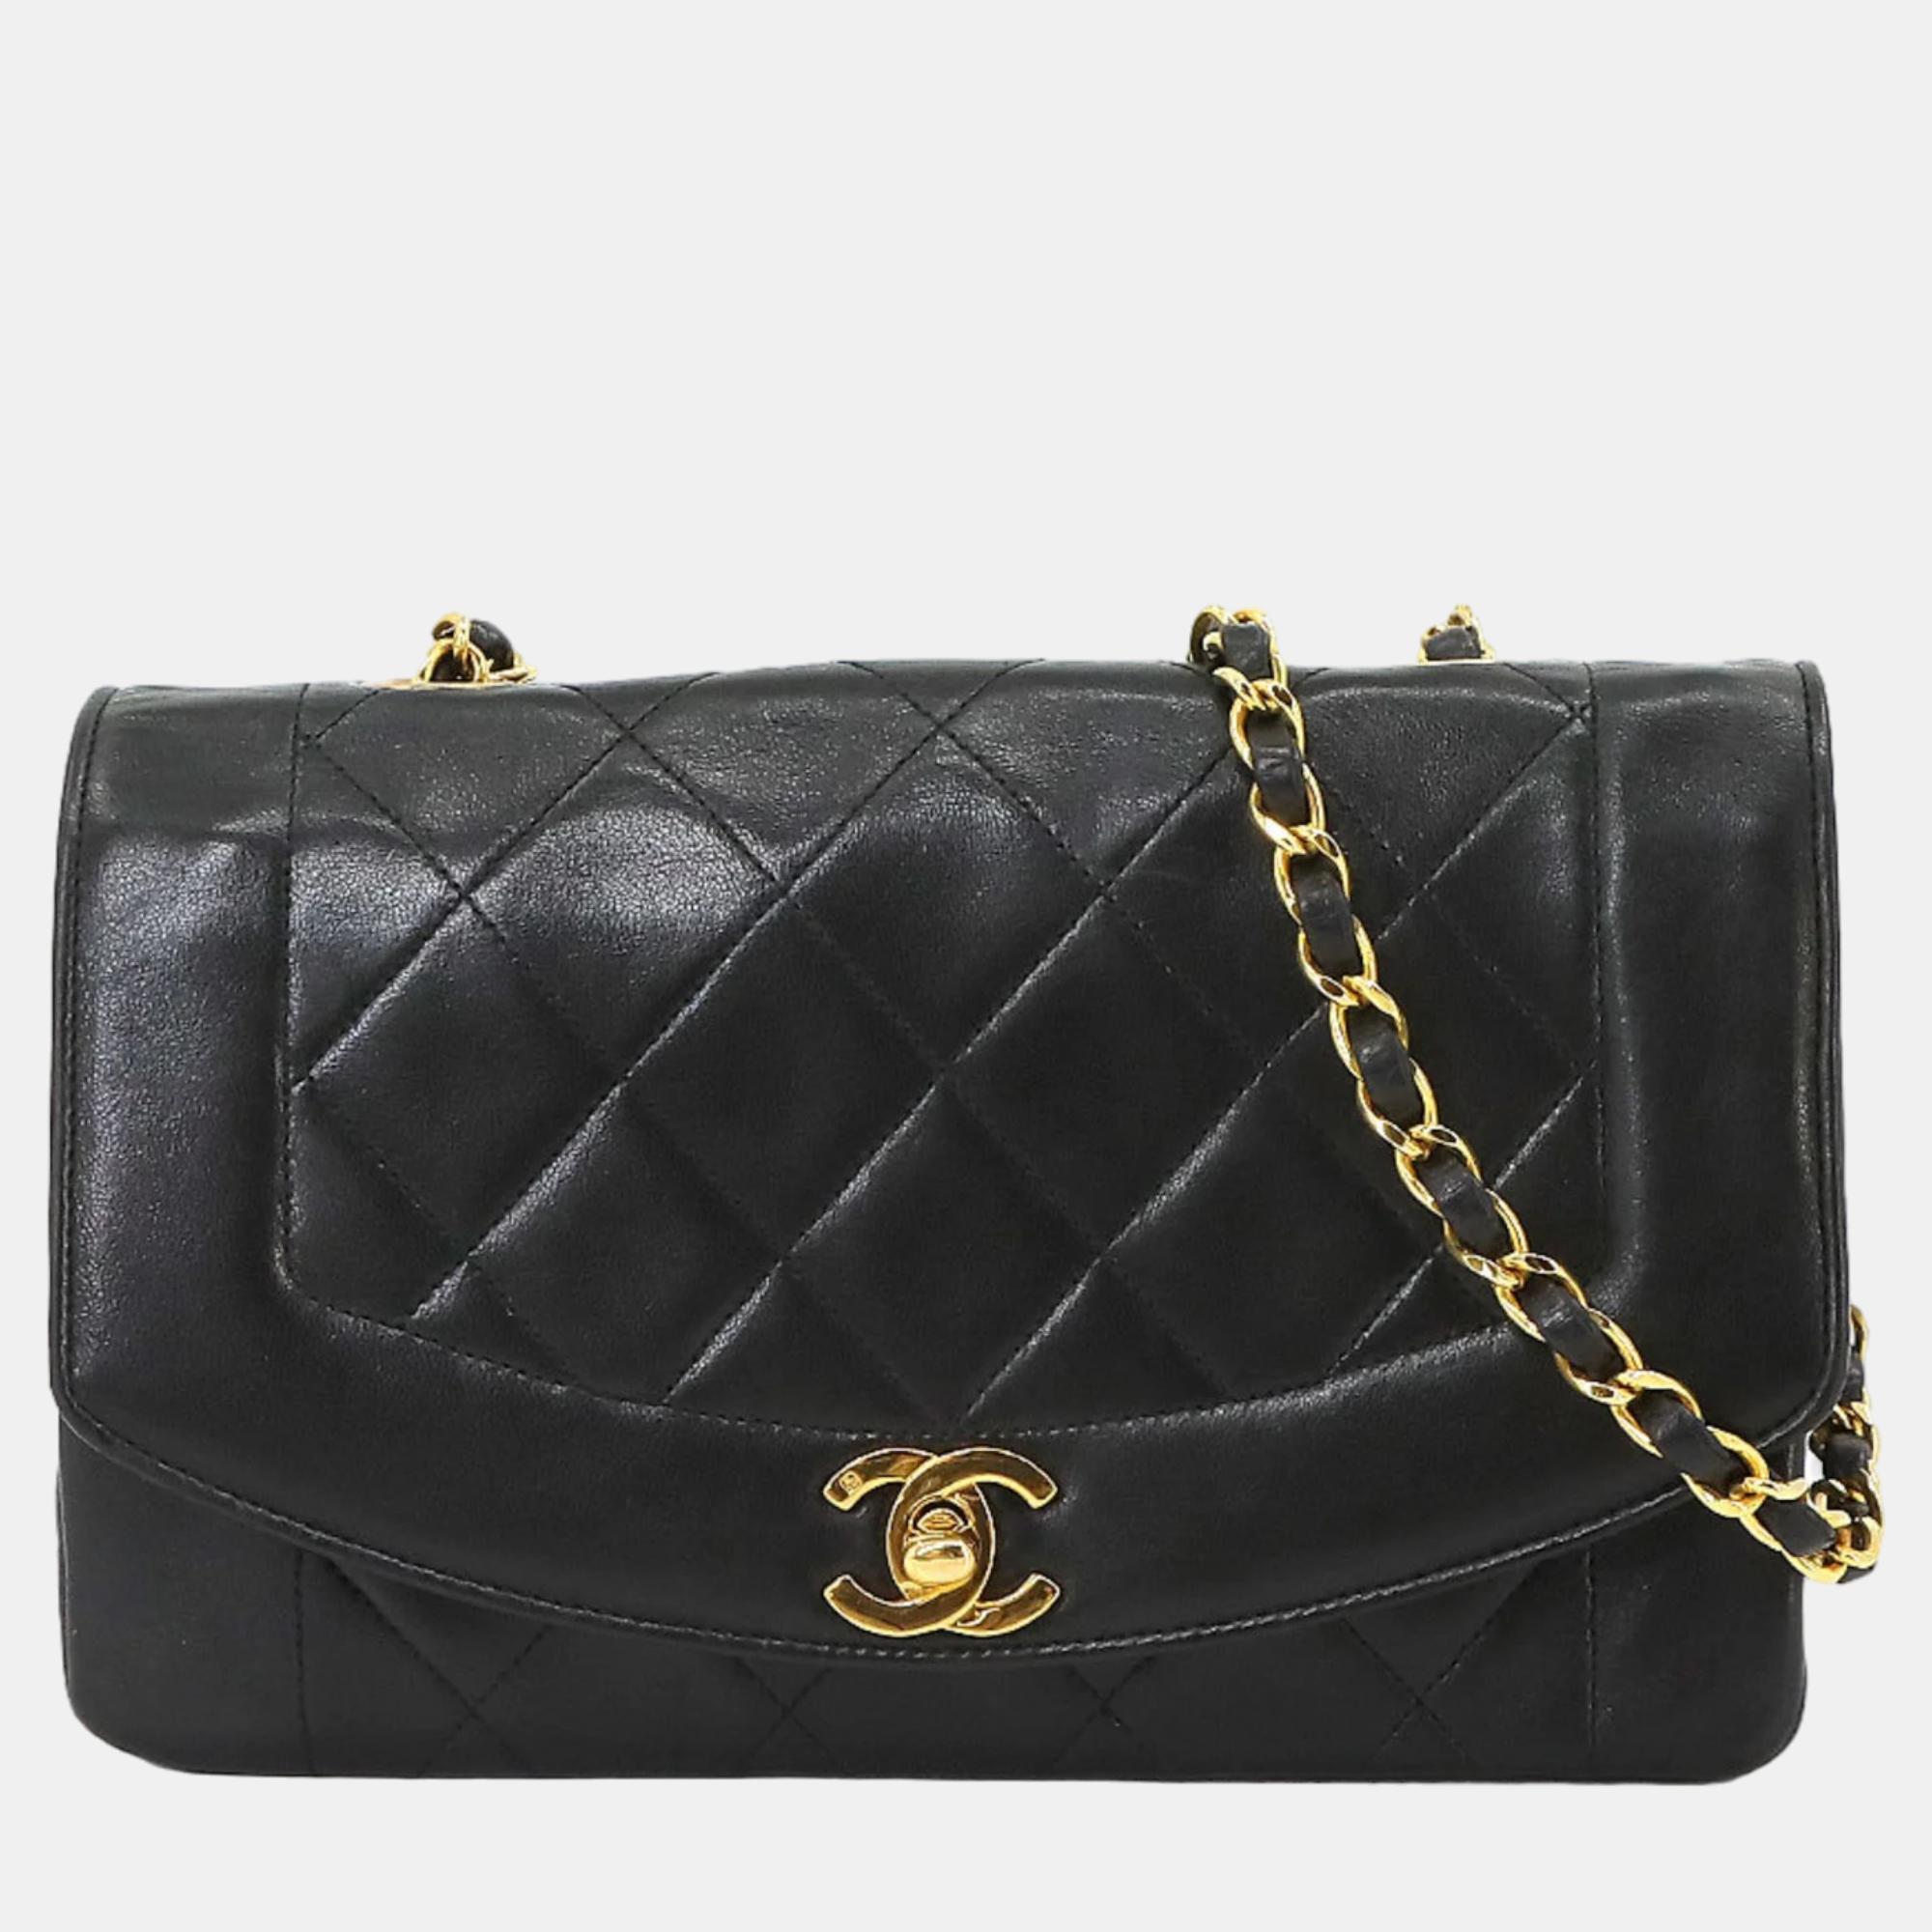 Chanel black leather vintage diana shoulder bag